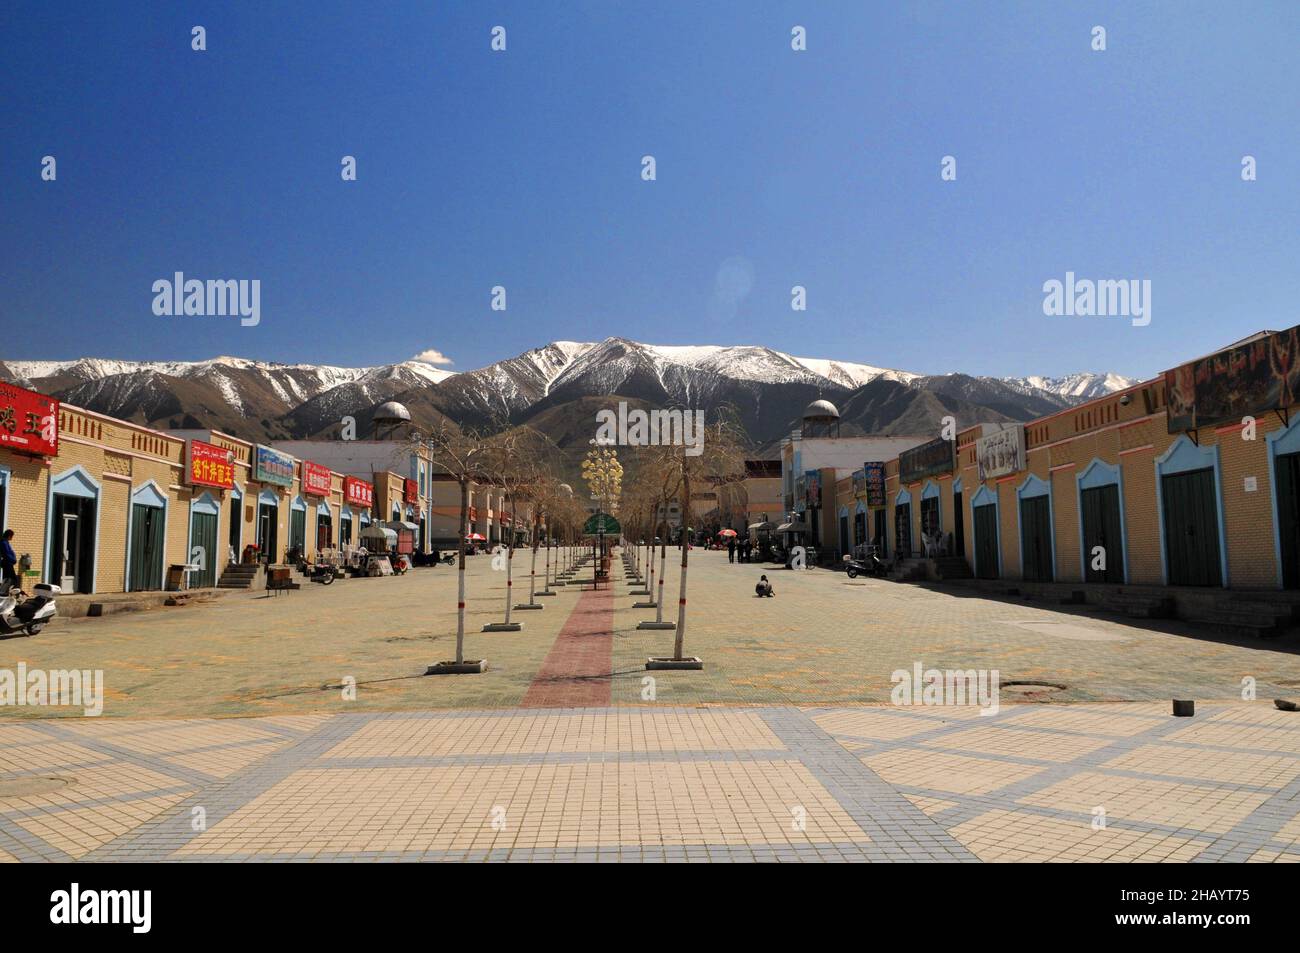 La piazza commerciale della città di una piccola città nella provincia settentrionale di Xinjiang in Cina. Foto Stock